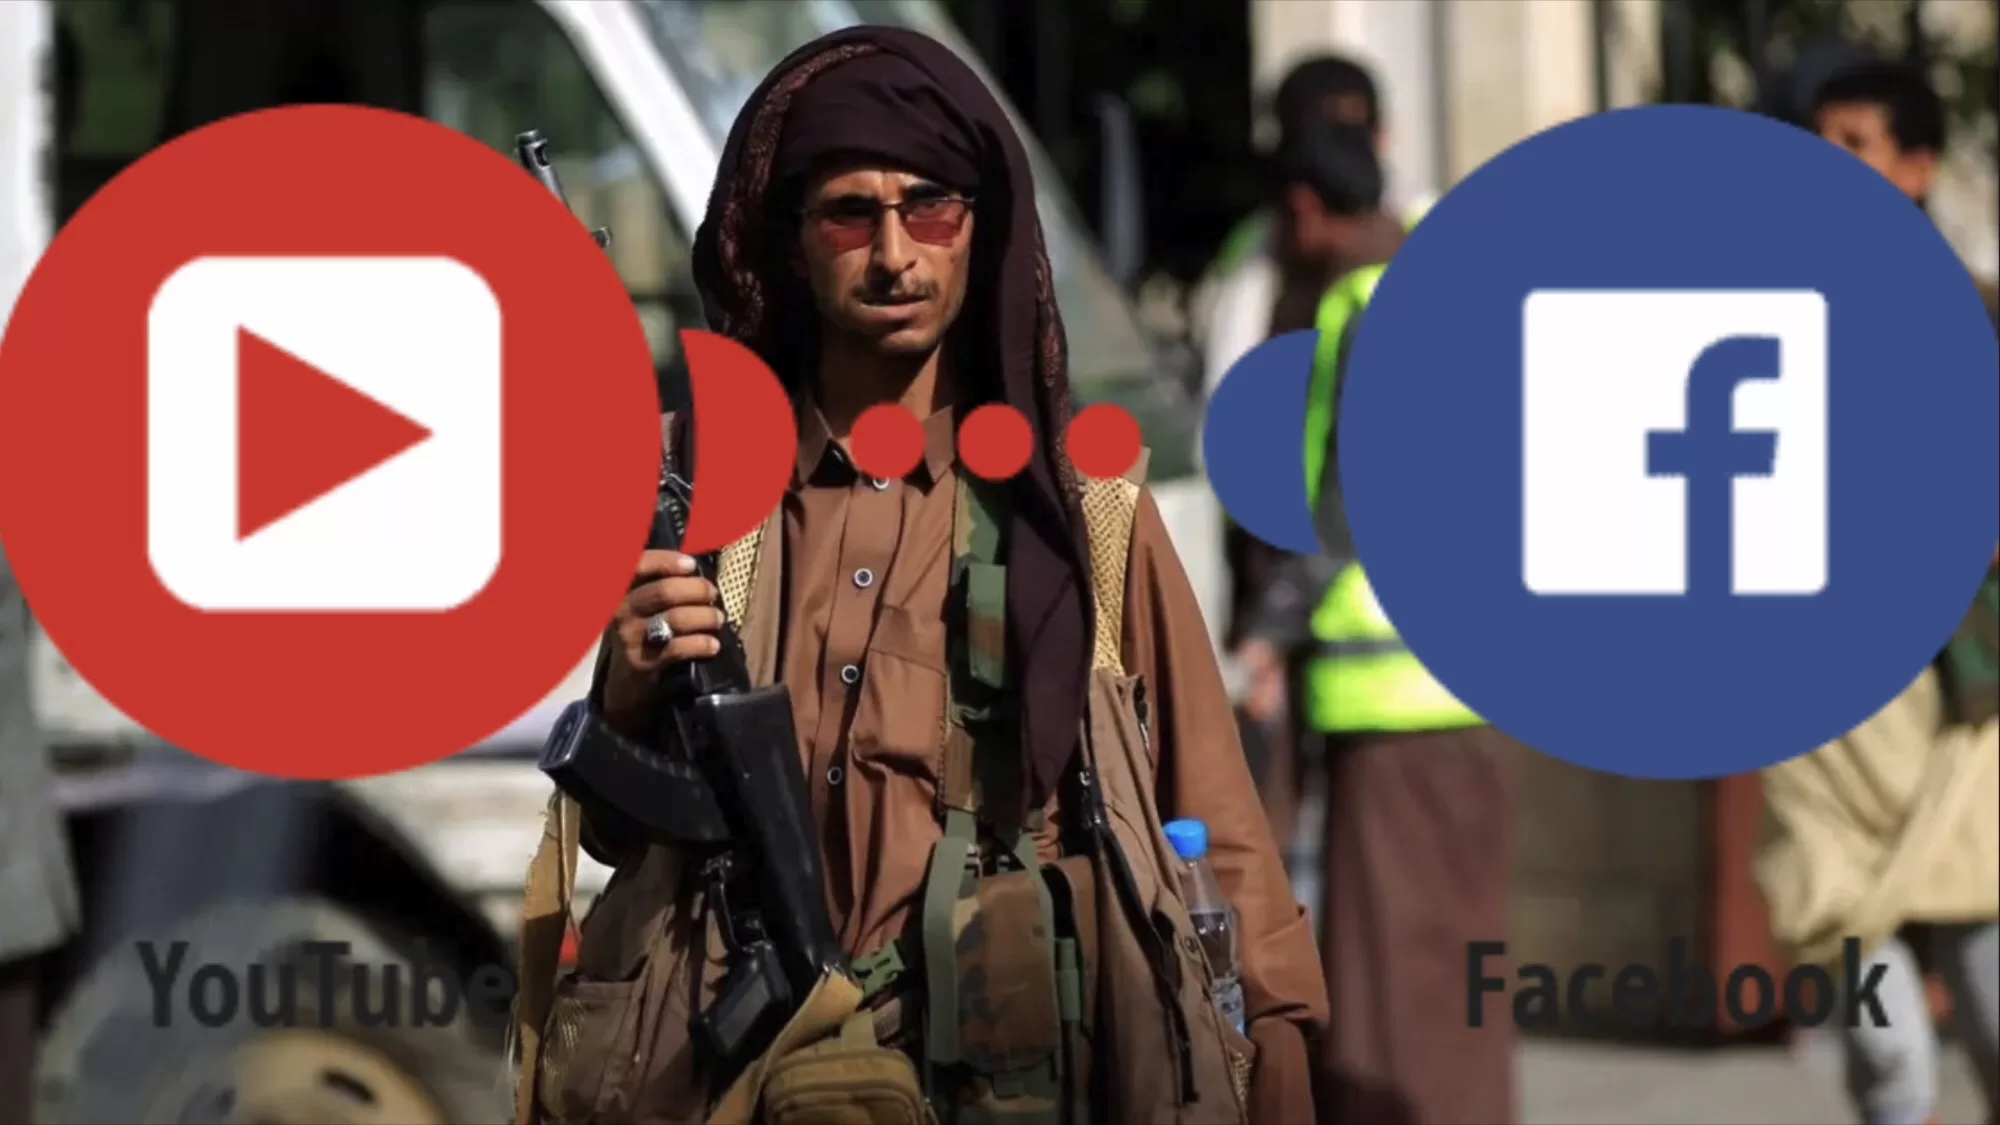 خالد الرويشان يرد على تهديدات الحوثيين بحظر فيسبوك ويوتيوب في اليمن